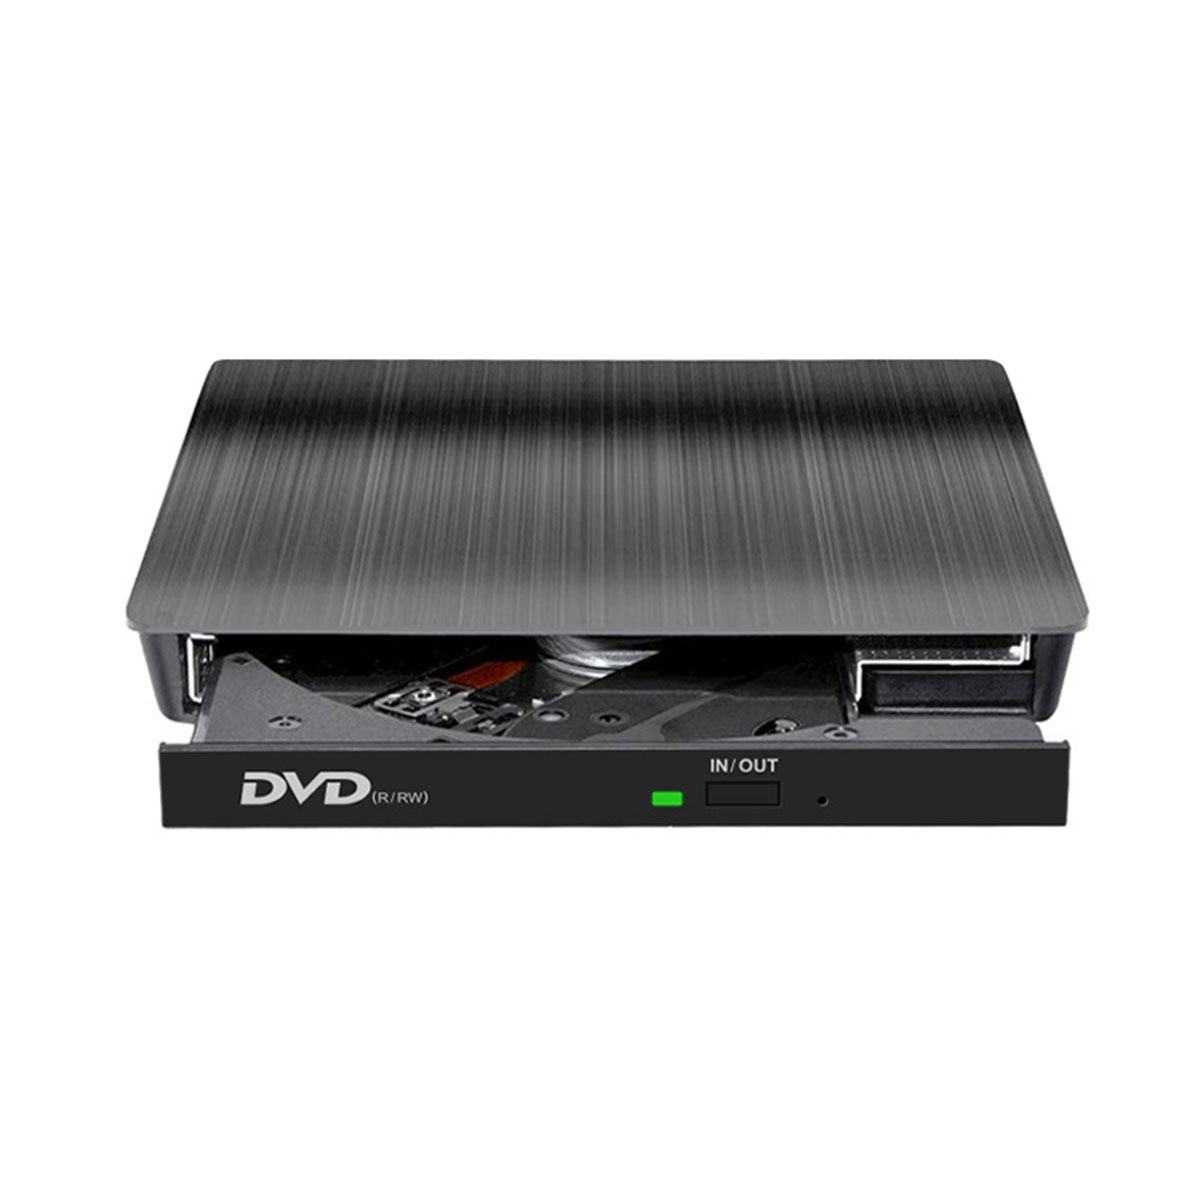 BRIGHTAKE USB3.0 extern Übertragungsgeschwindigkeit Universelle DVD-Brenner - DVD-Brenner Kompatibilität, superschnelle